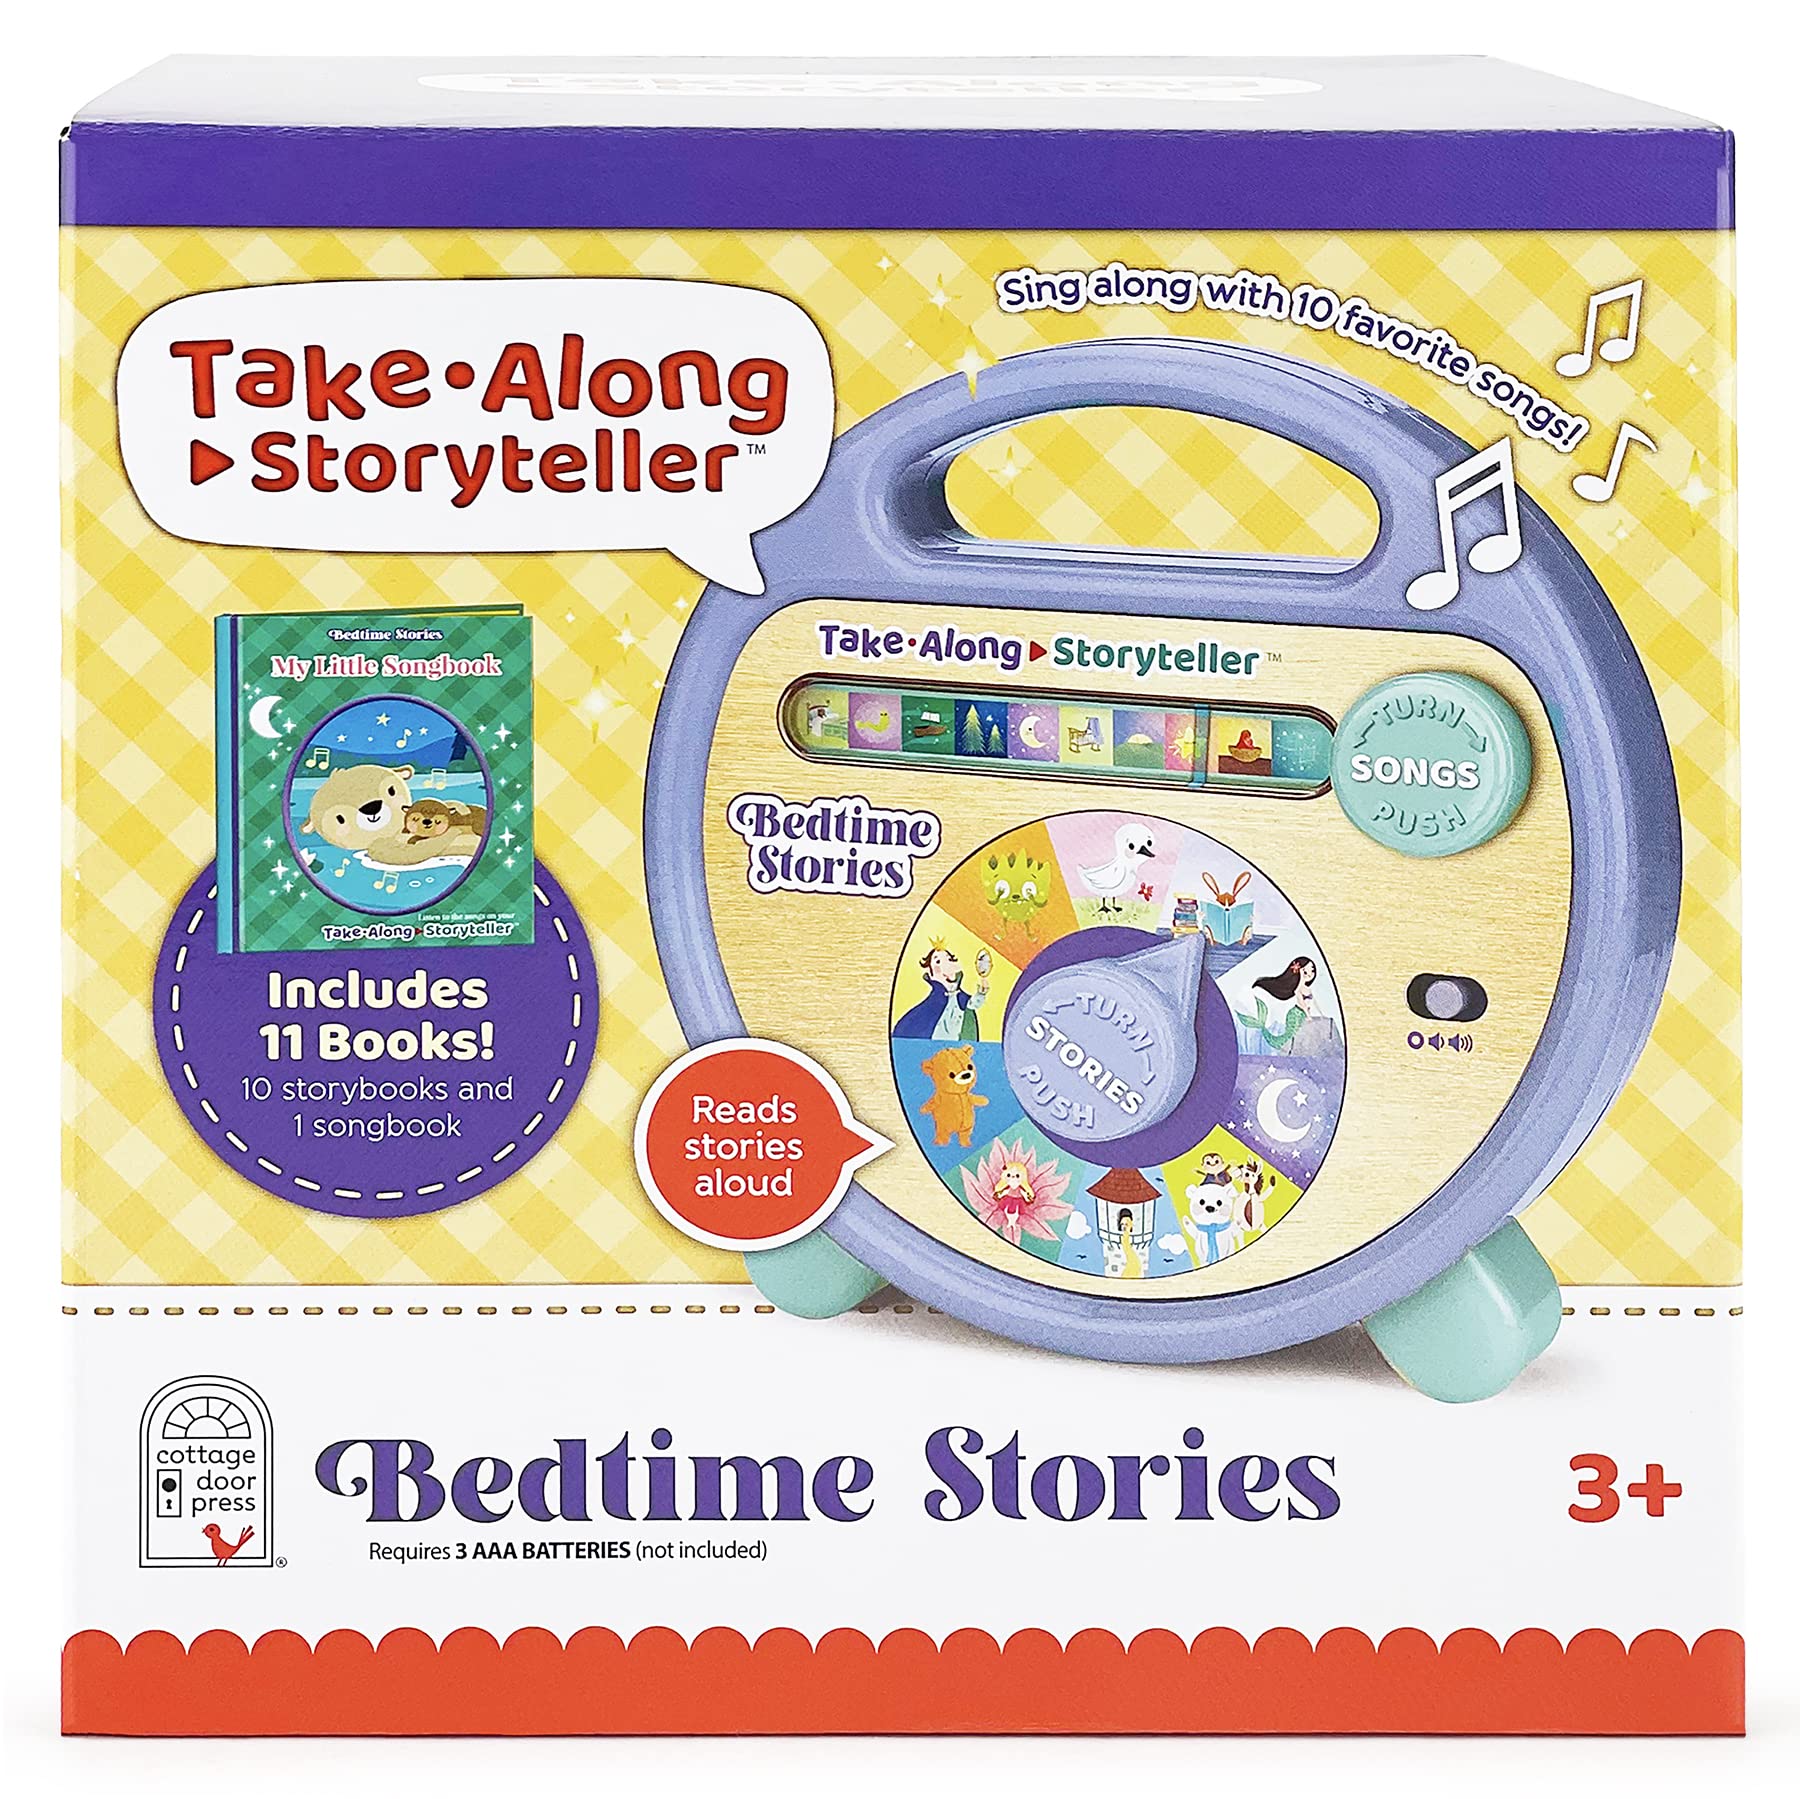 Take-Along Storyteller Bedtime Stories Interactive Electronic Take Along Storyteller with 11 Books, Ages 3-8